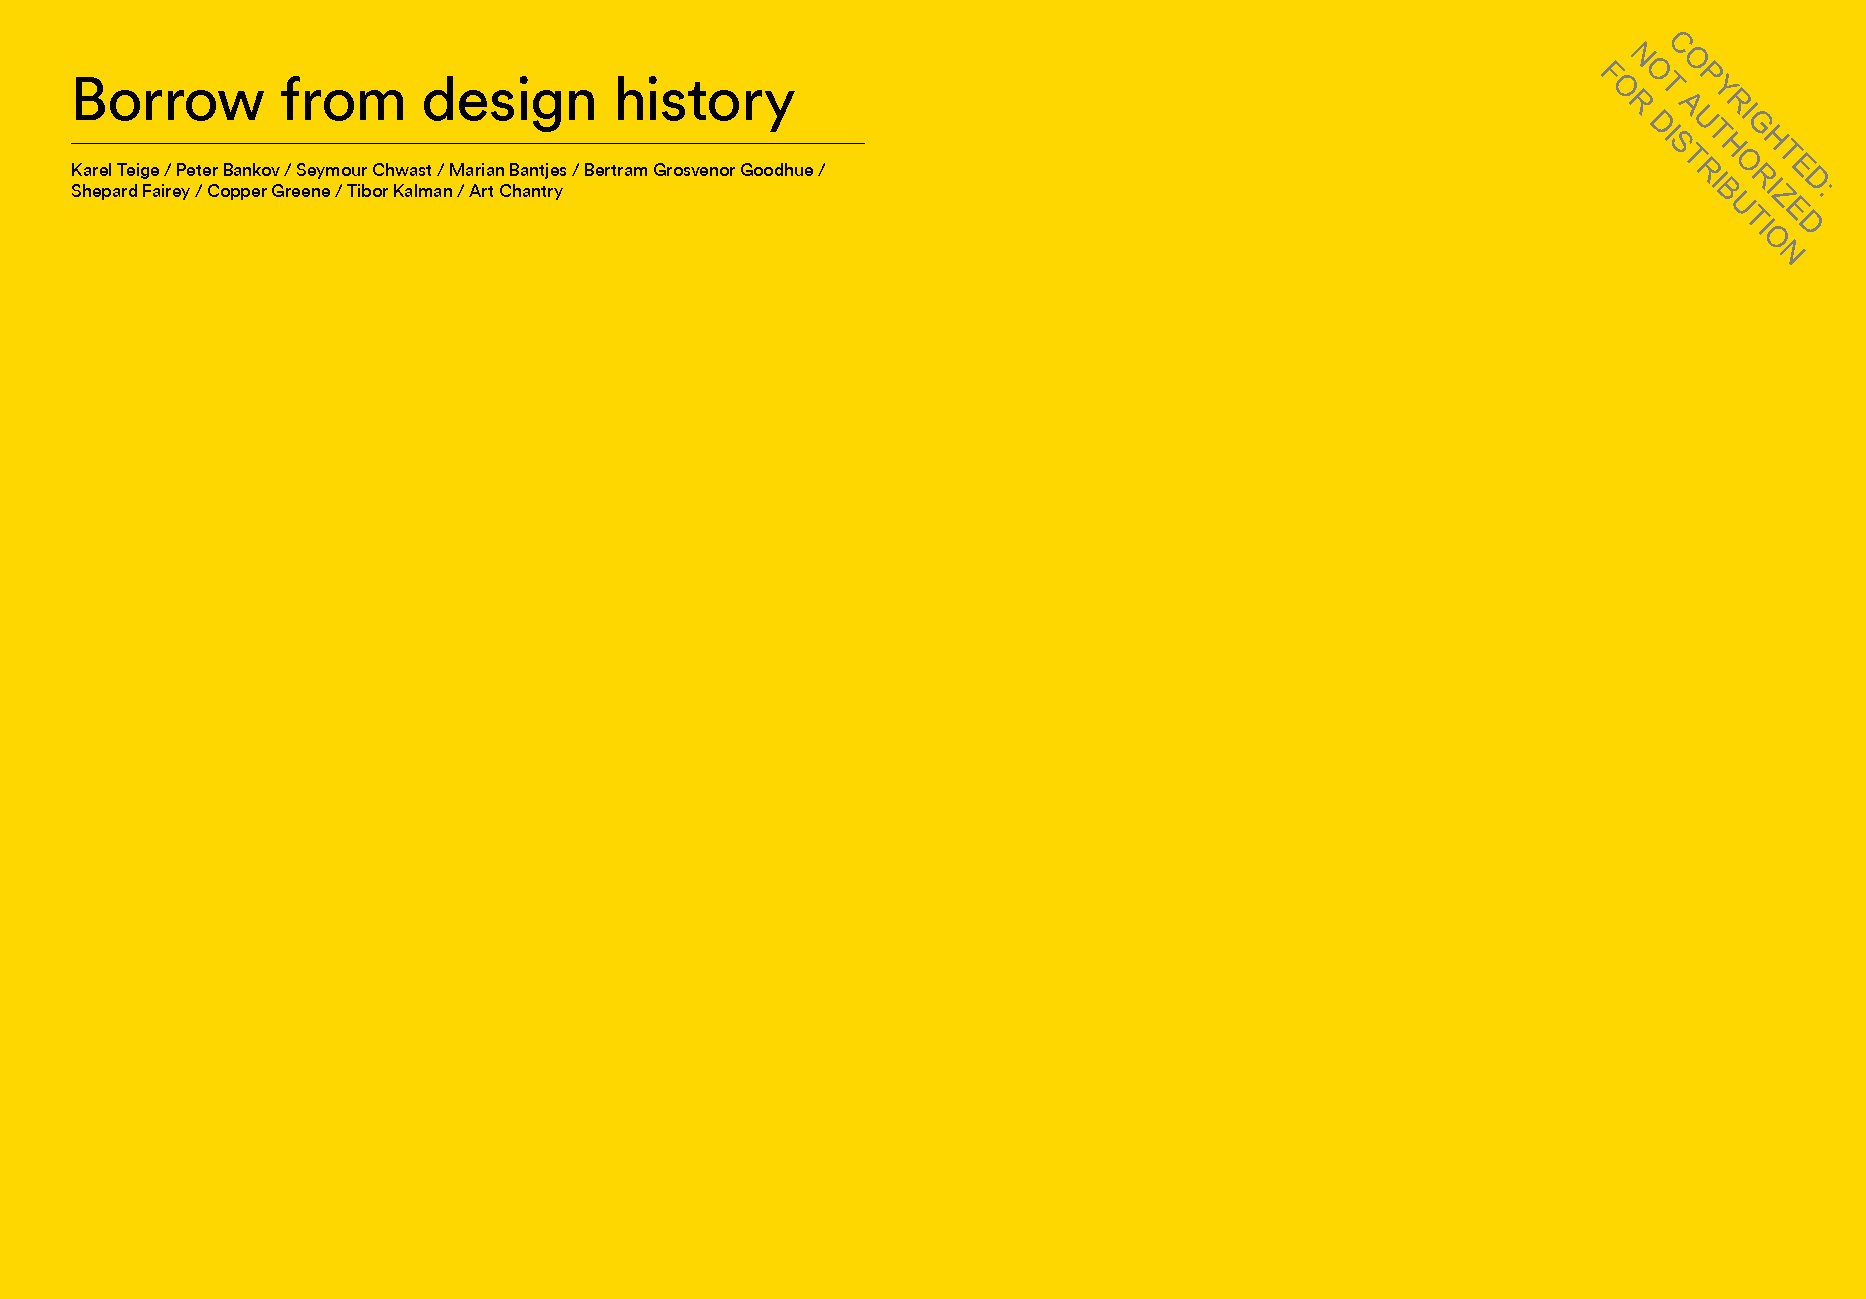 The Graphic Design Idea Book